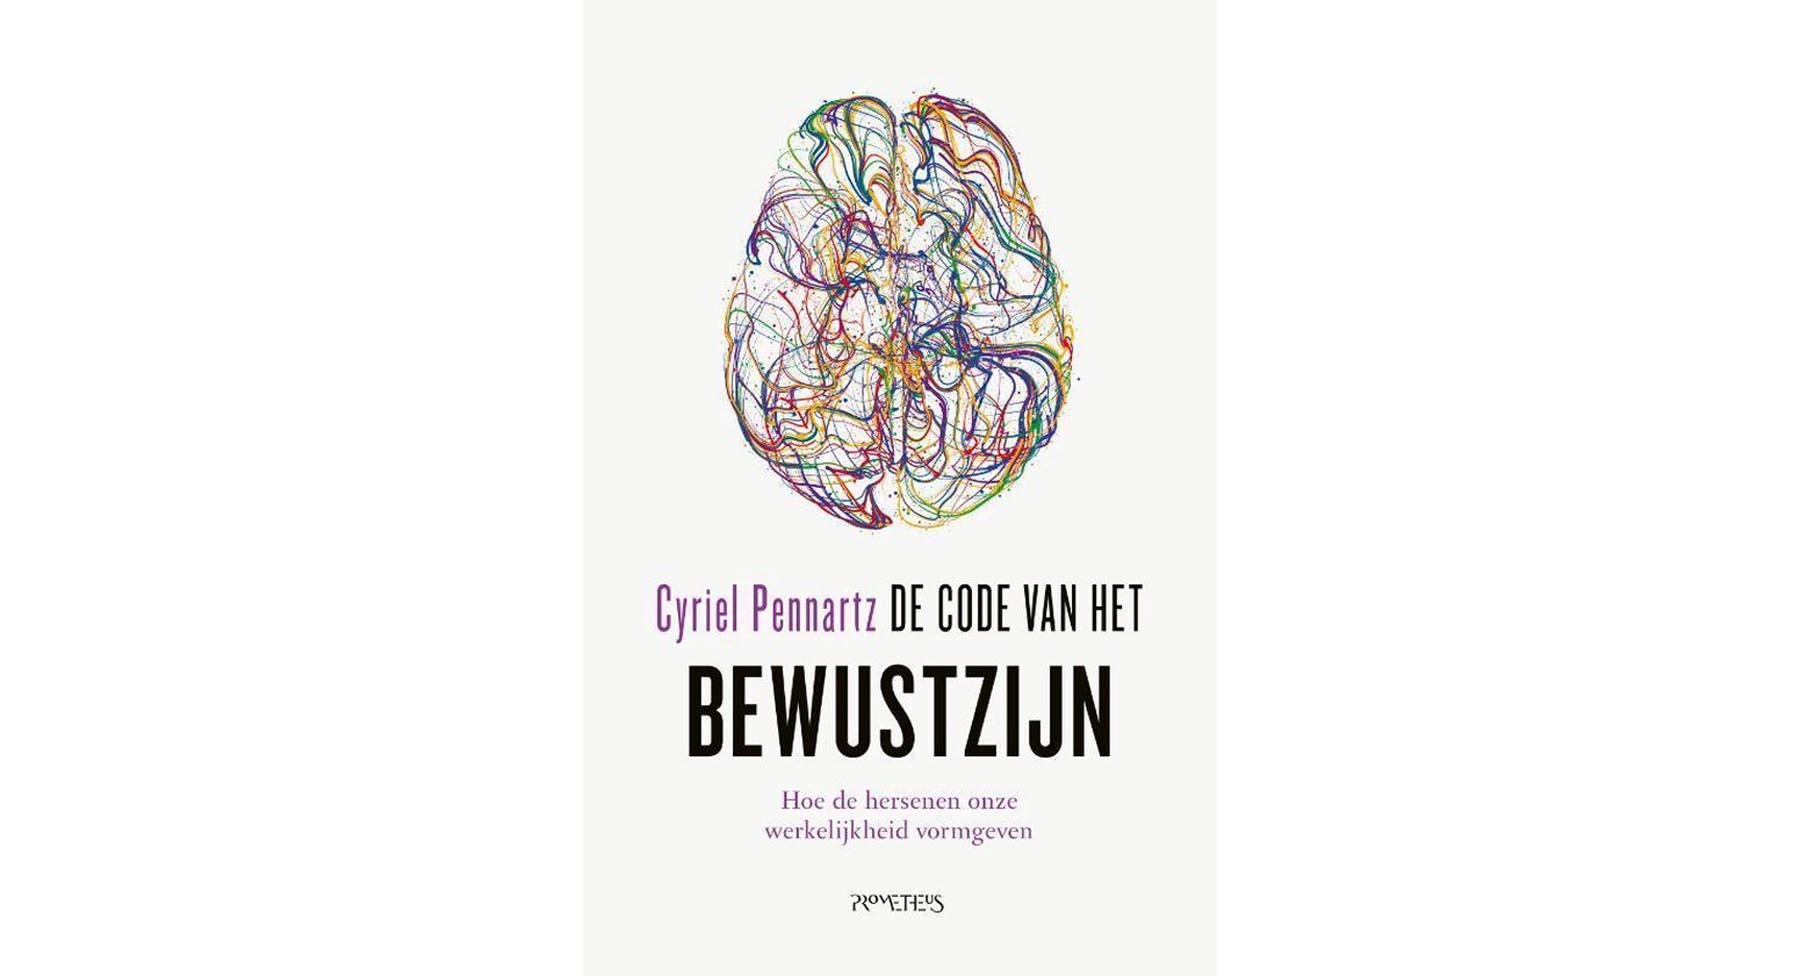 The cover of the book of Cyriel Pennartz with the title 'De code van het bewustzijn'